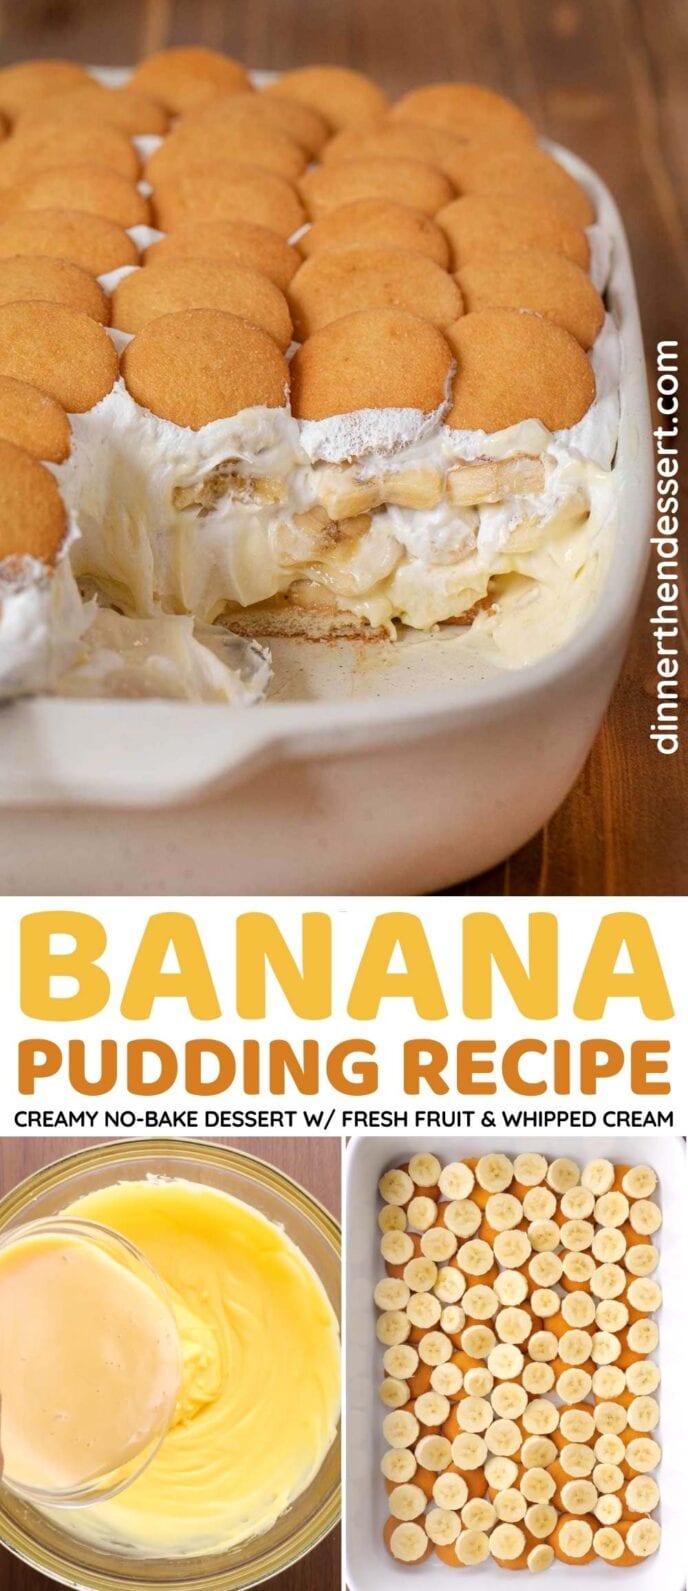 Banana Pudding Collage